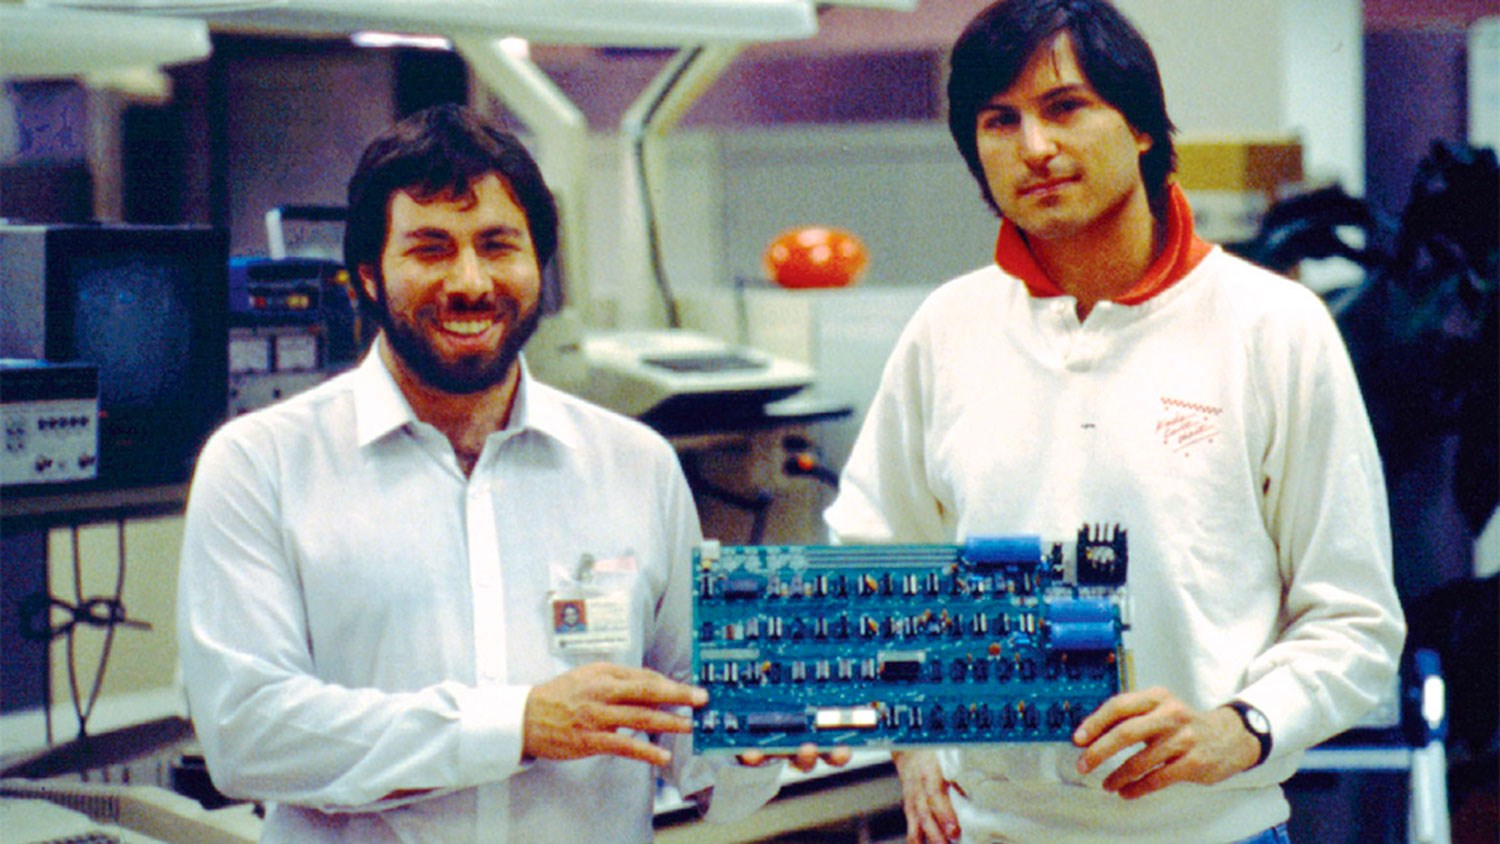 Jobs ve Wozniak tarafından oluşturulan Apple 1 satışa çıkıyor